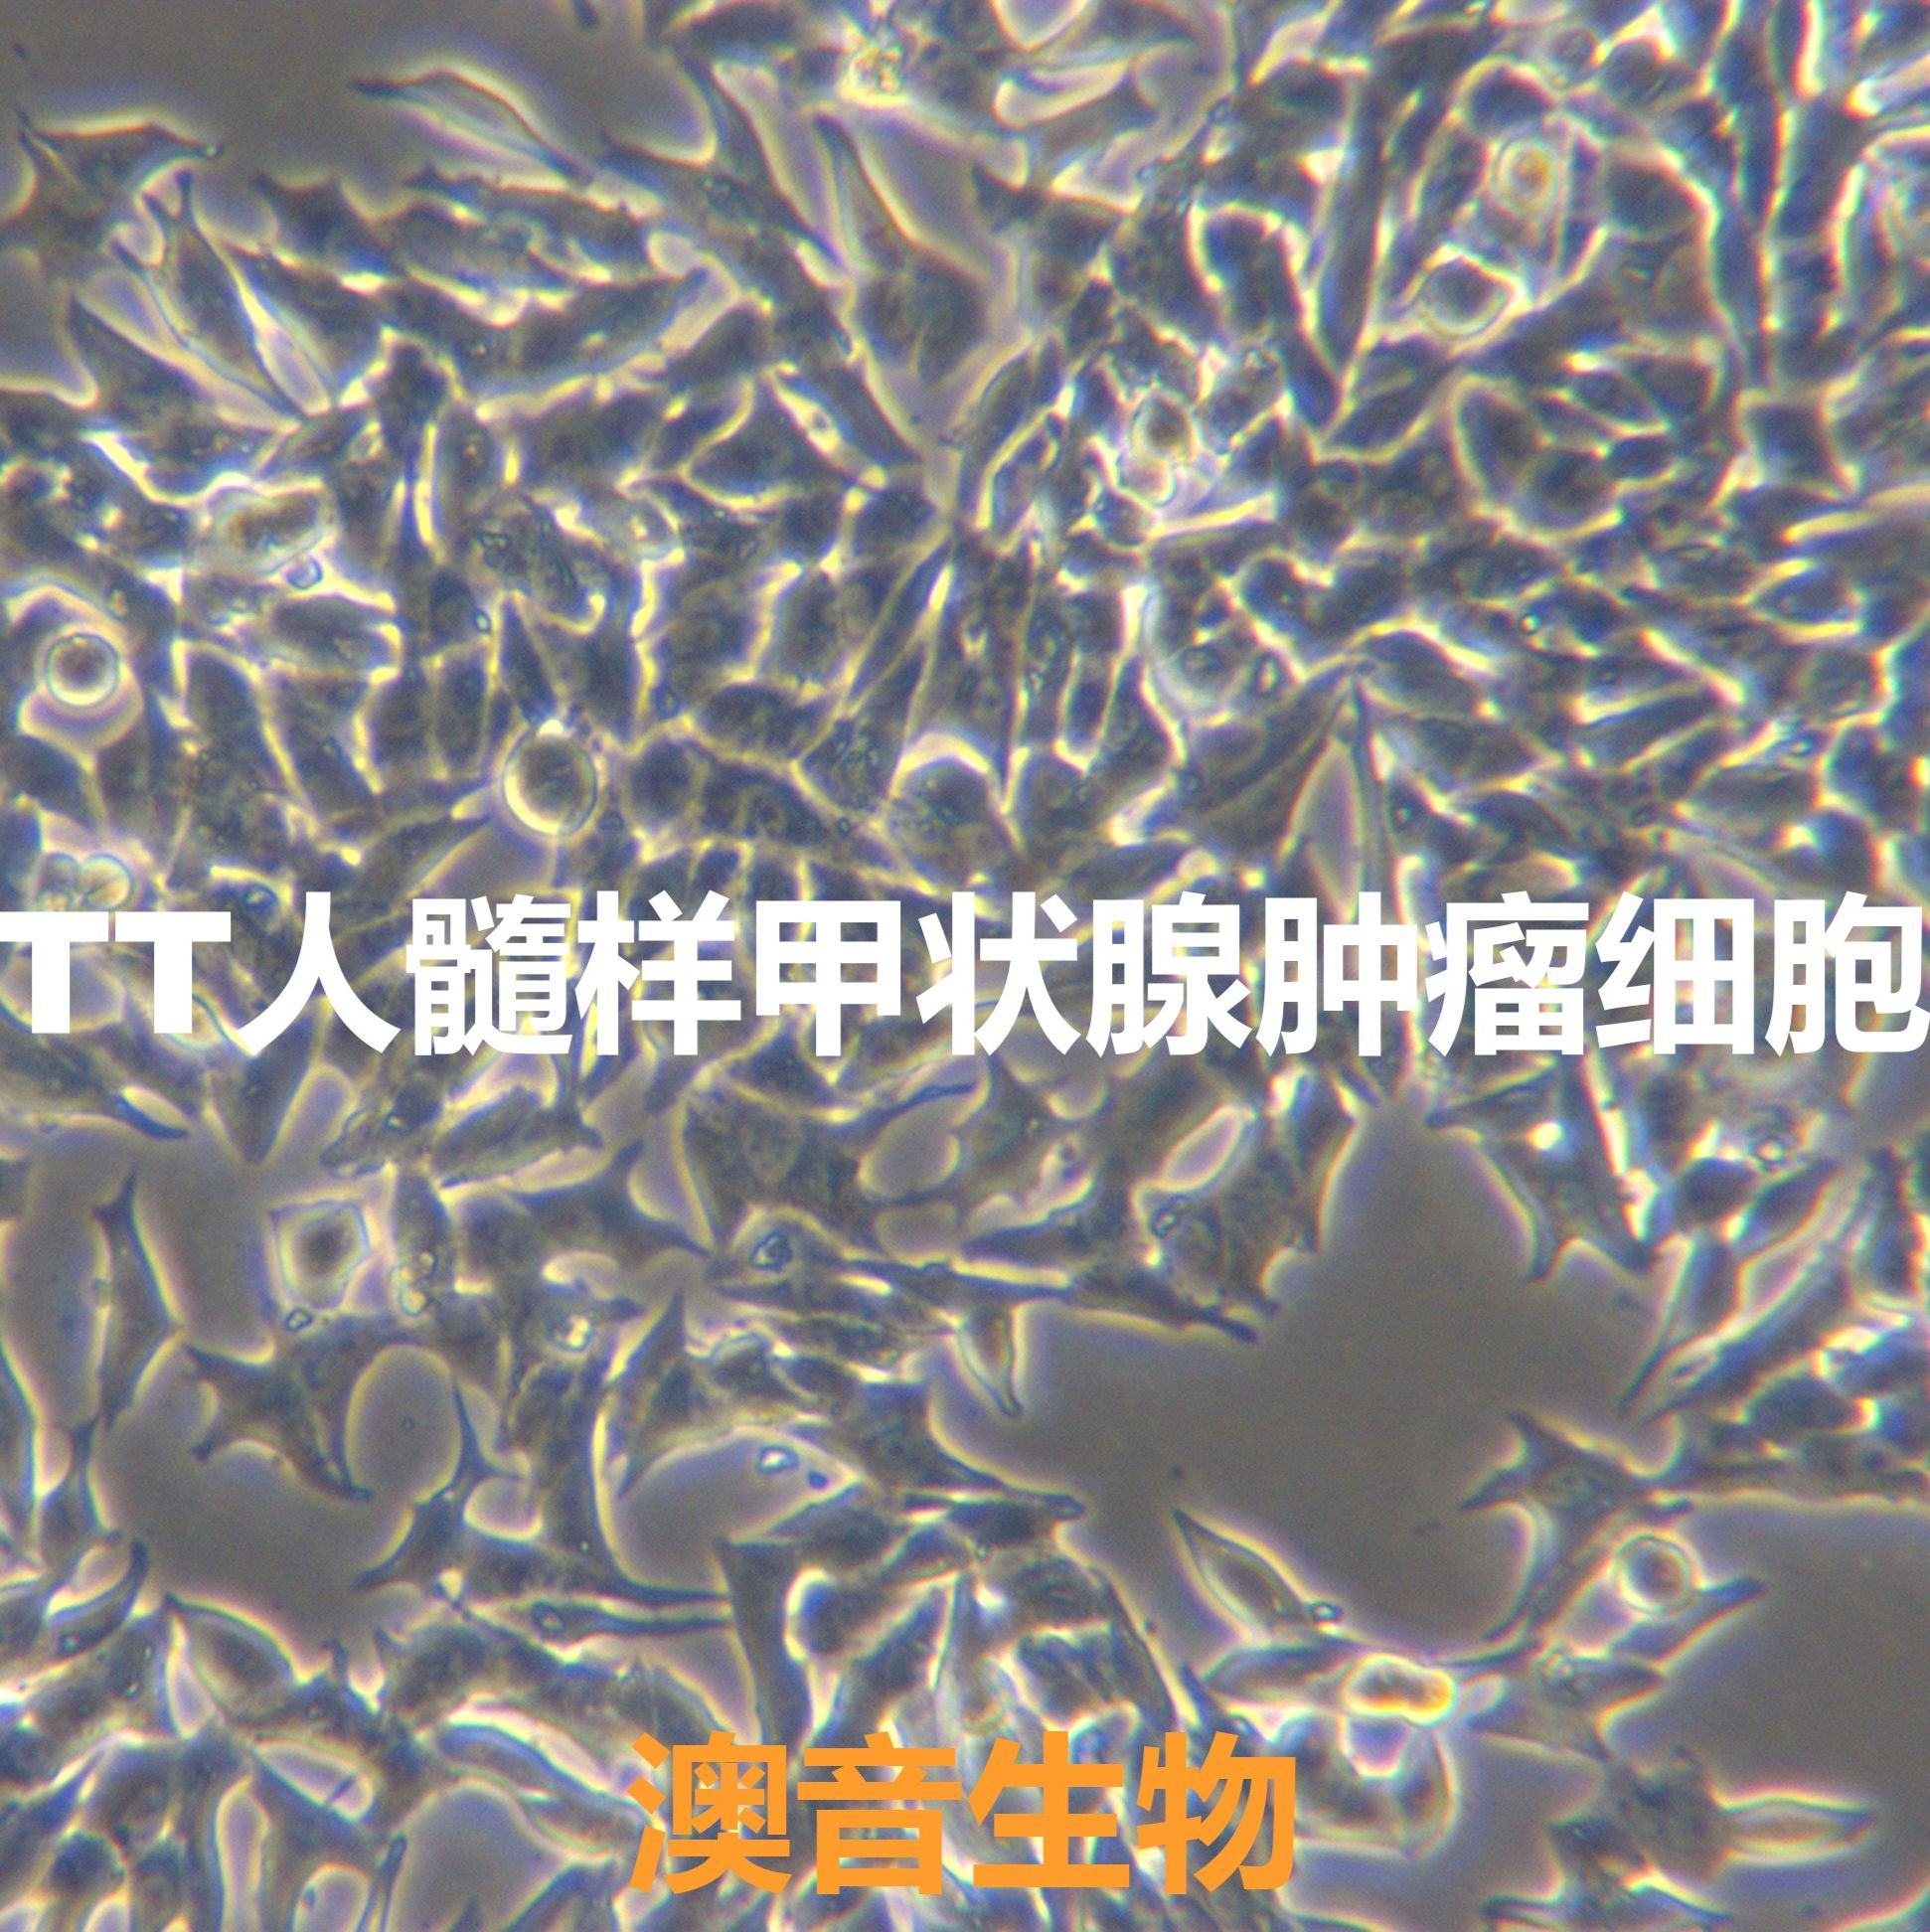 TT【MTC-TT;TT】人髓样甲状腺肿瘤细胞